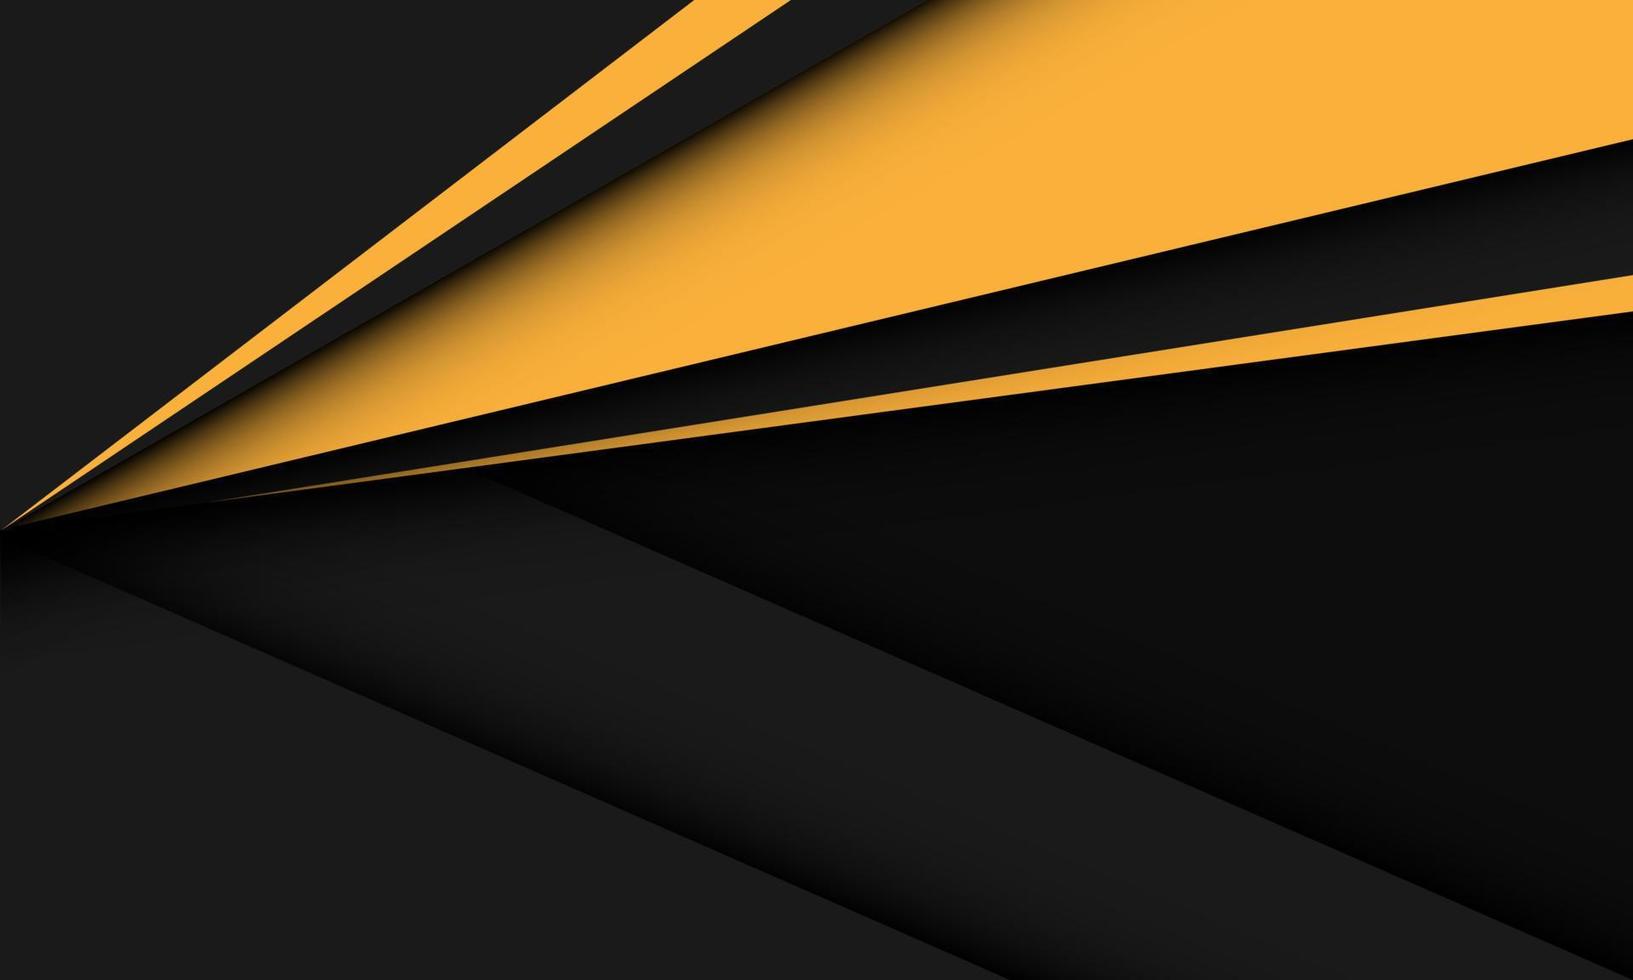 direção de seta triângulo amarelo abstrato dinâmico no design de sombra preta cinza moderno vetor de fundo futurista